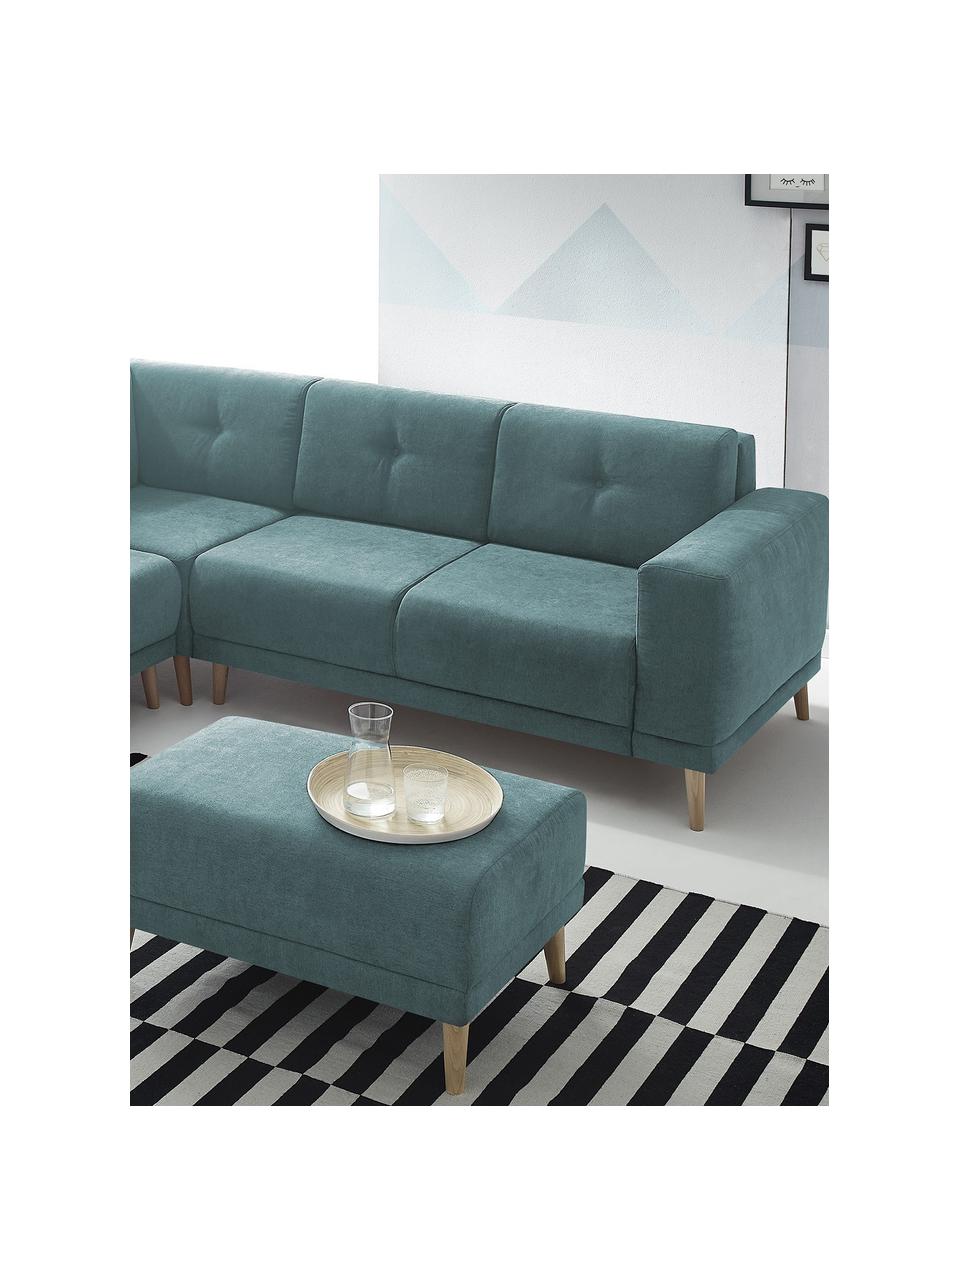 Sofa narożna z funkcją spania Luna, Tapicerka: 100% aksamit poliestrowy, Nogi: metal lakierowany, Niebieski, S 260 x G 260 cm